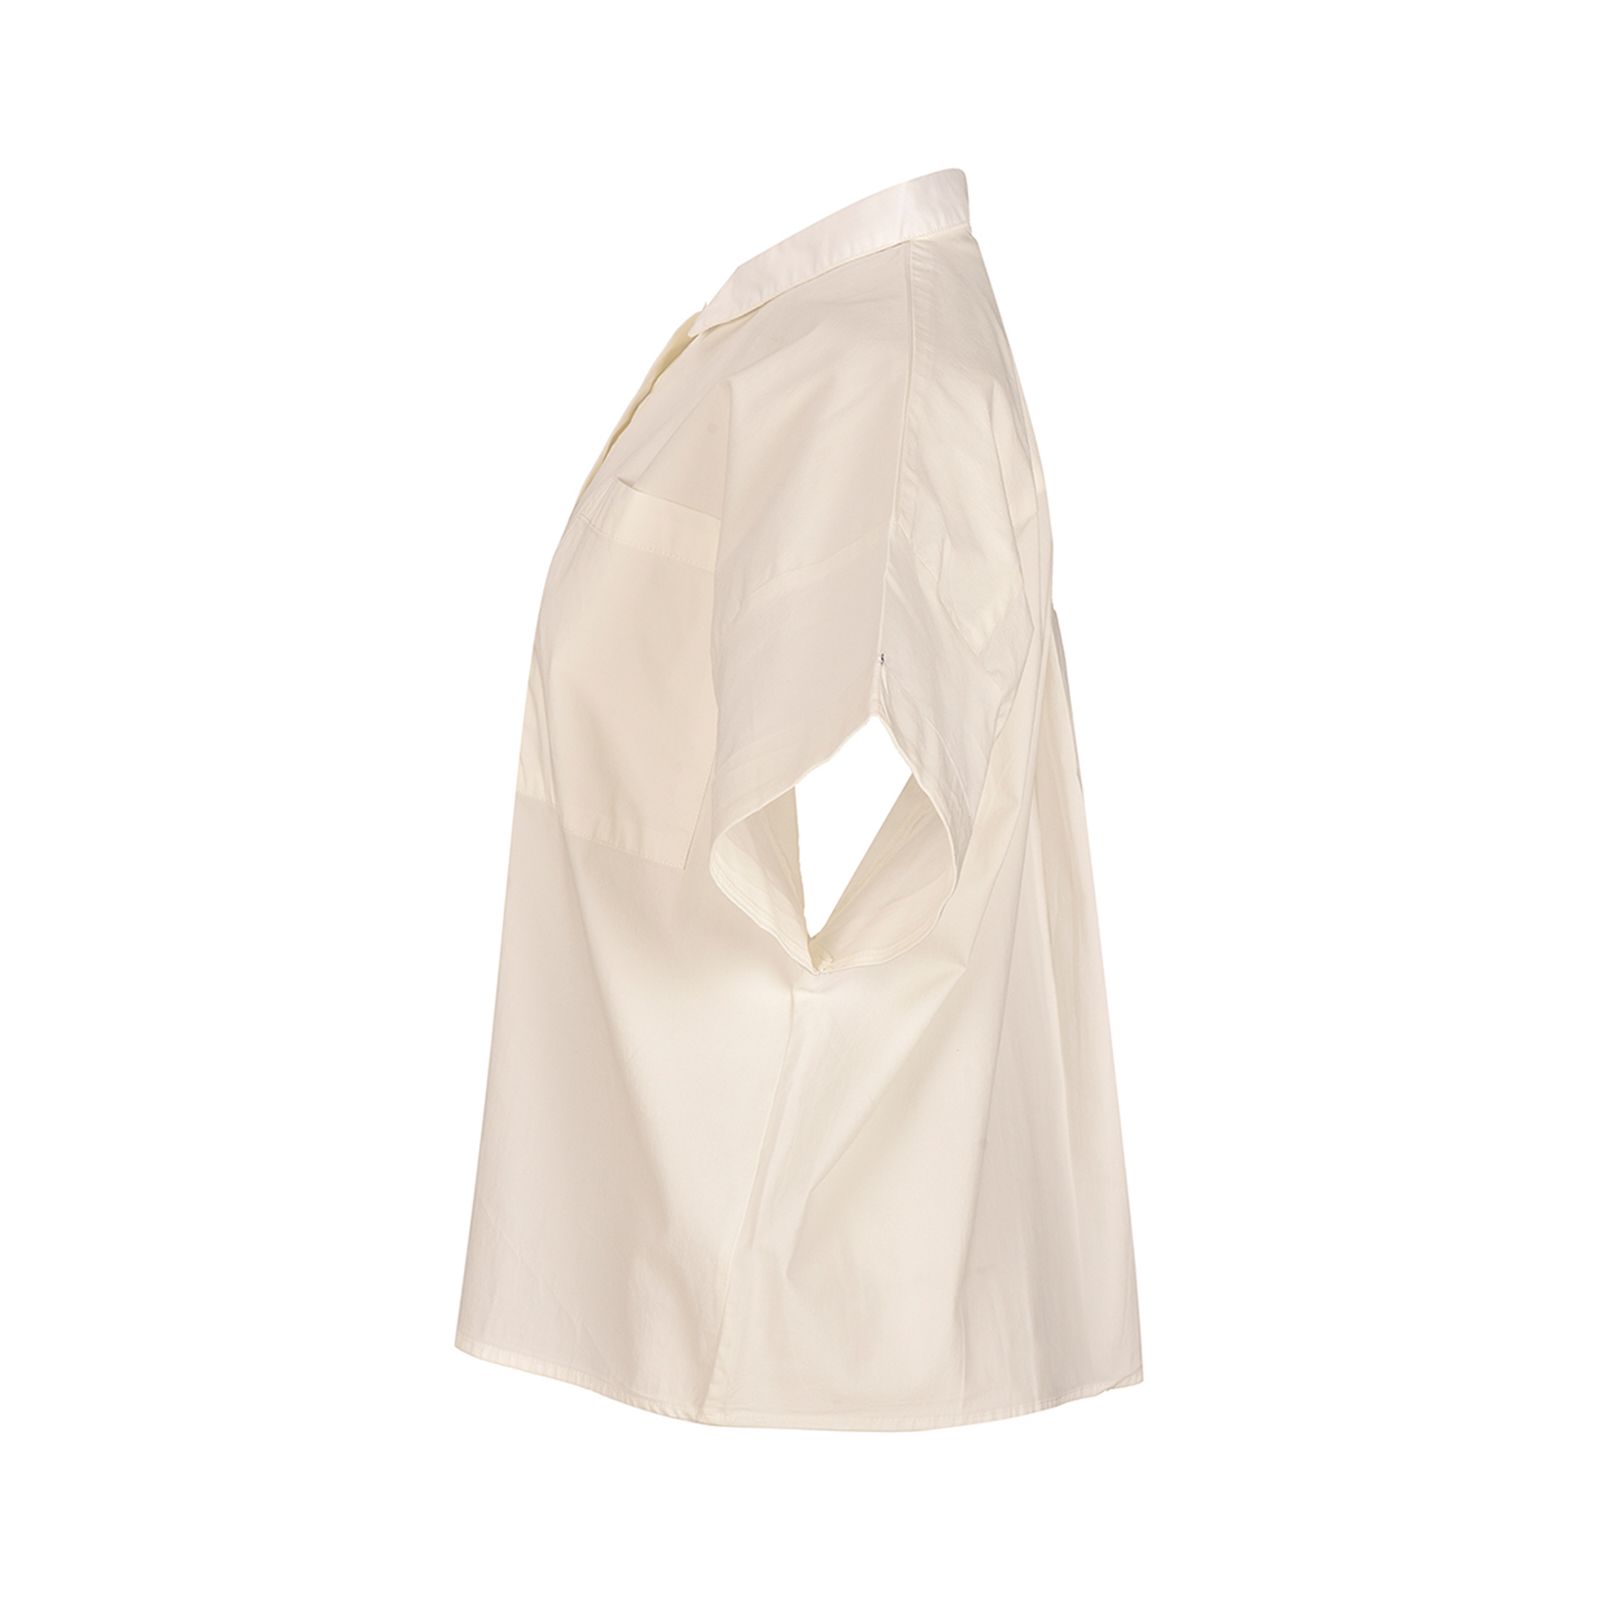 شومیز آستین کوتاه زنانه بادی اسپینر مدل 3842 کد 1 رنگ سفید -  - 2